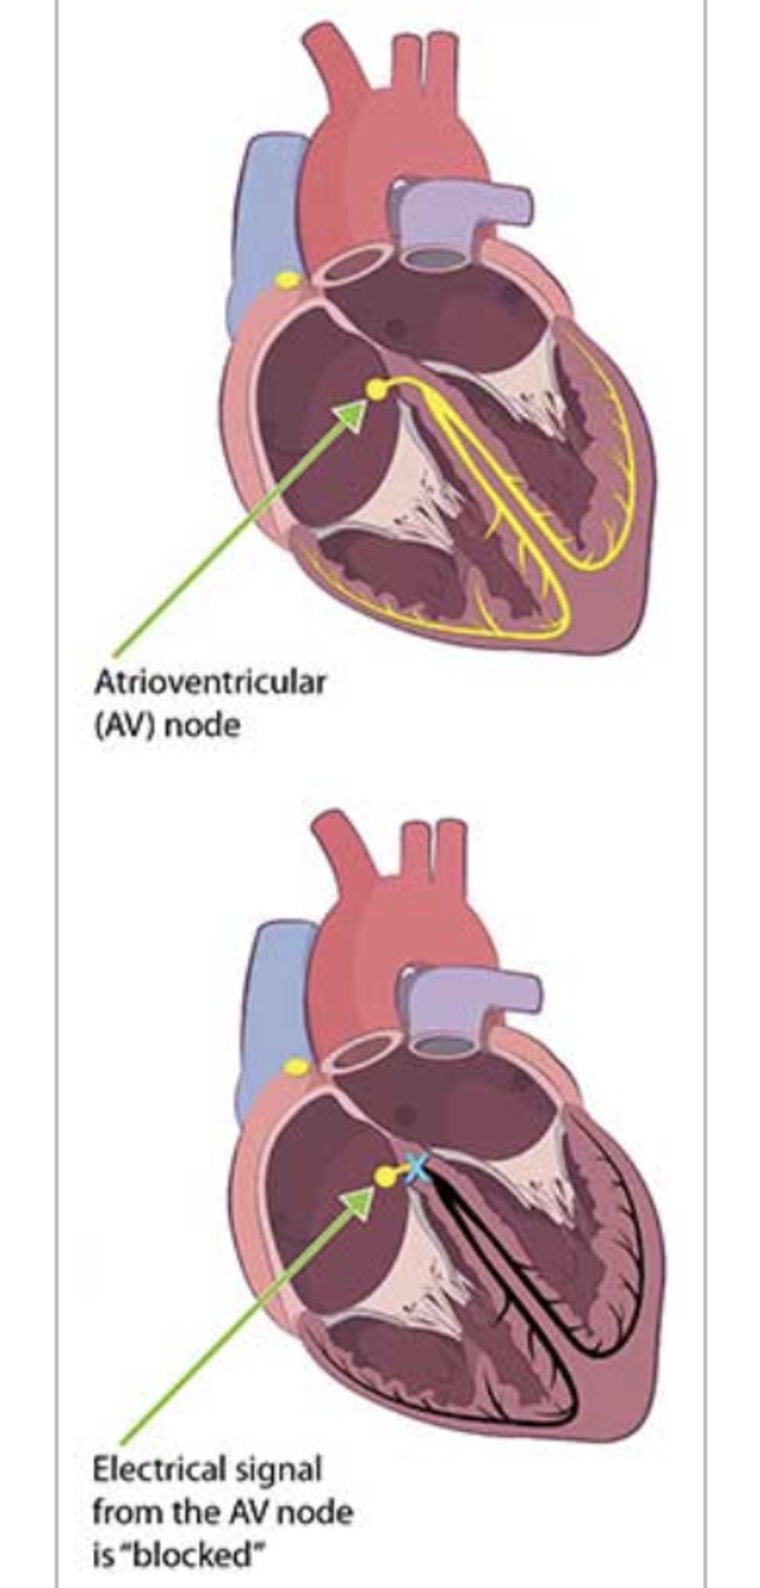 The AV node is disabled during heart block.